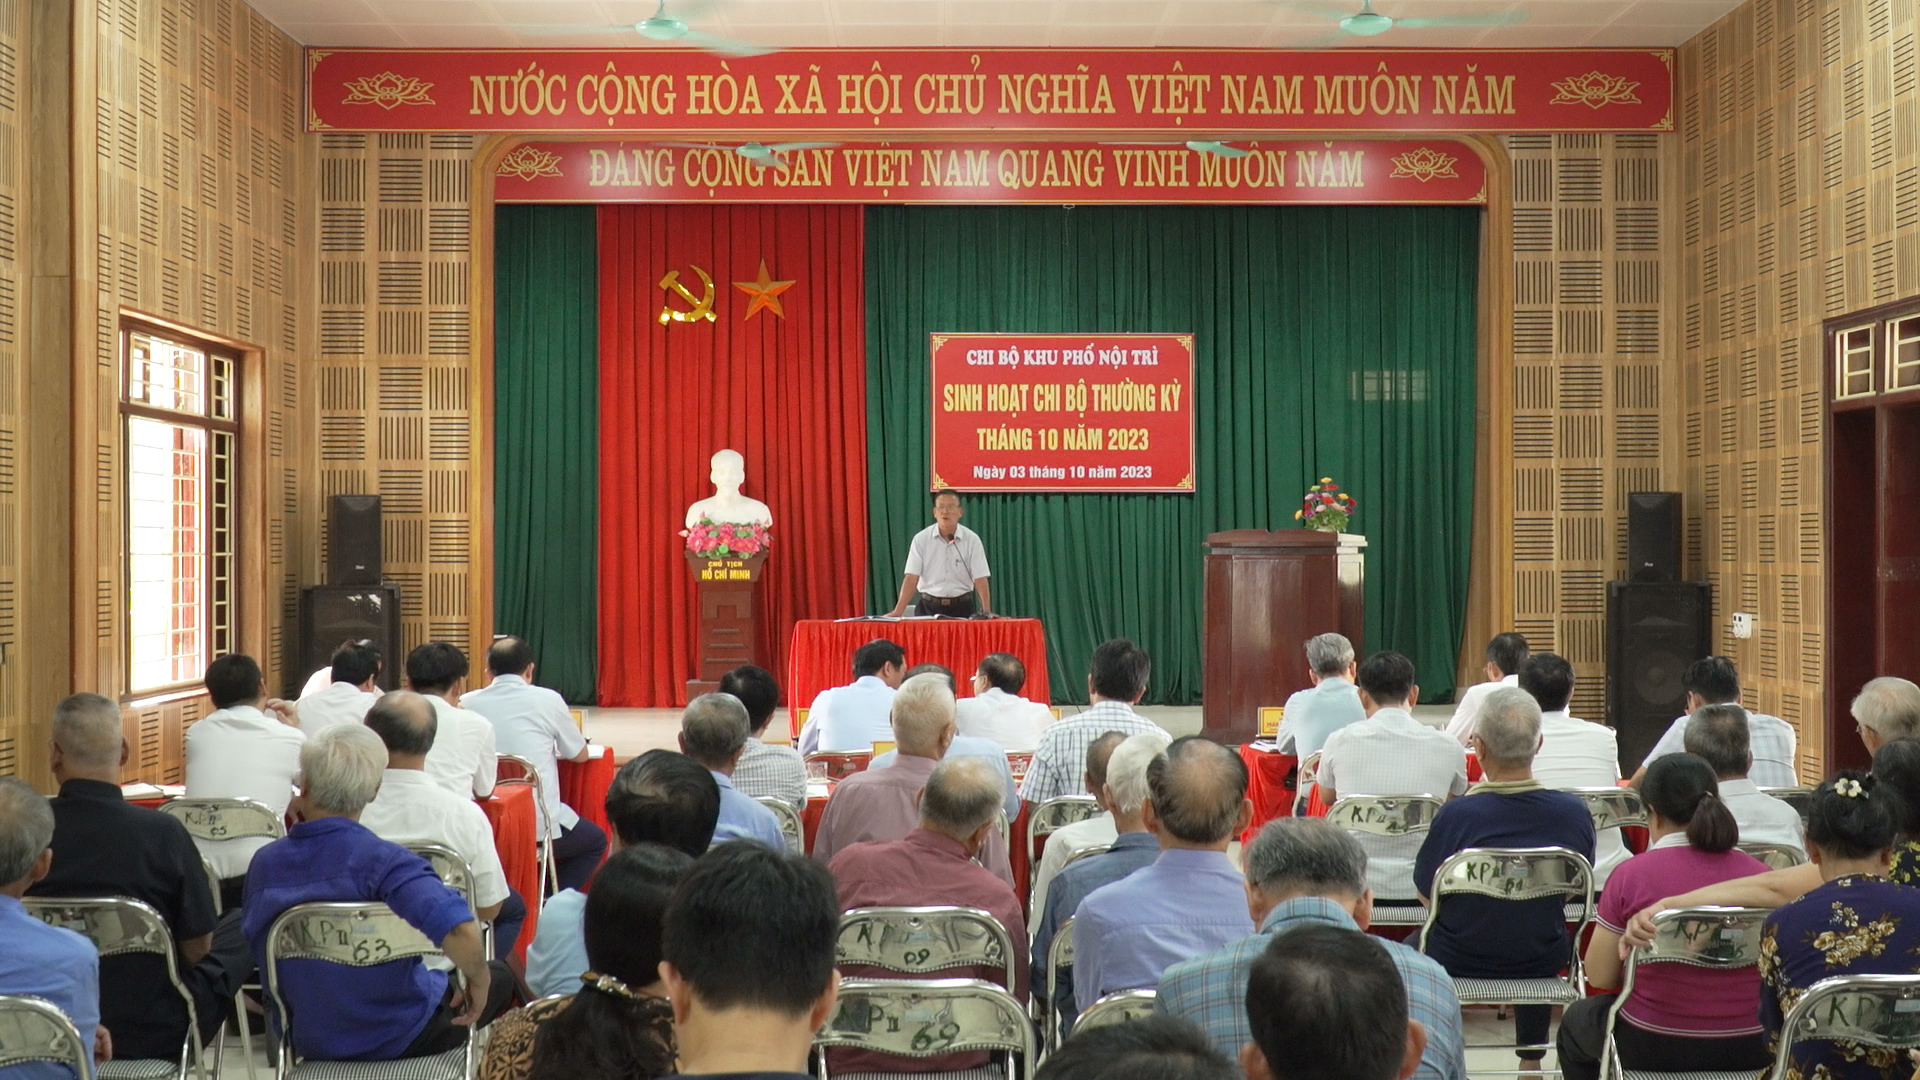 Lãnh đạo tỉnh thành phố dự sinh hoạt Chi bộ khu phố Nội Trì